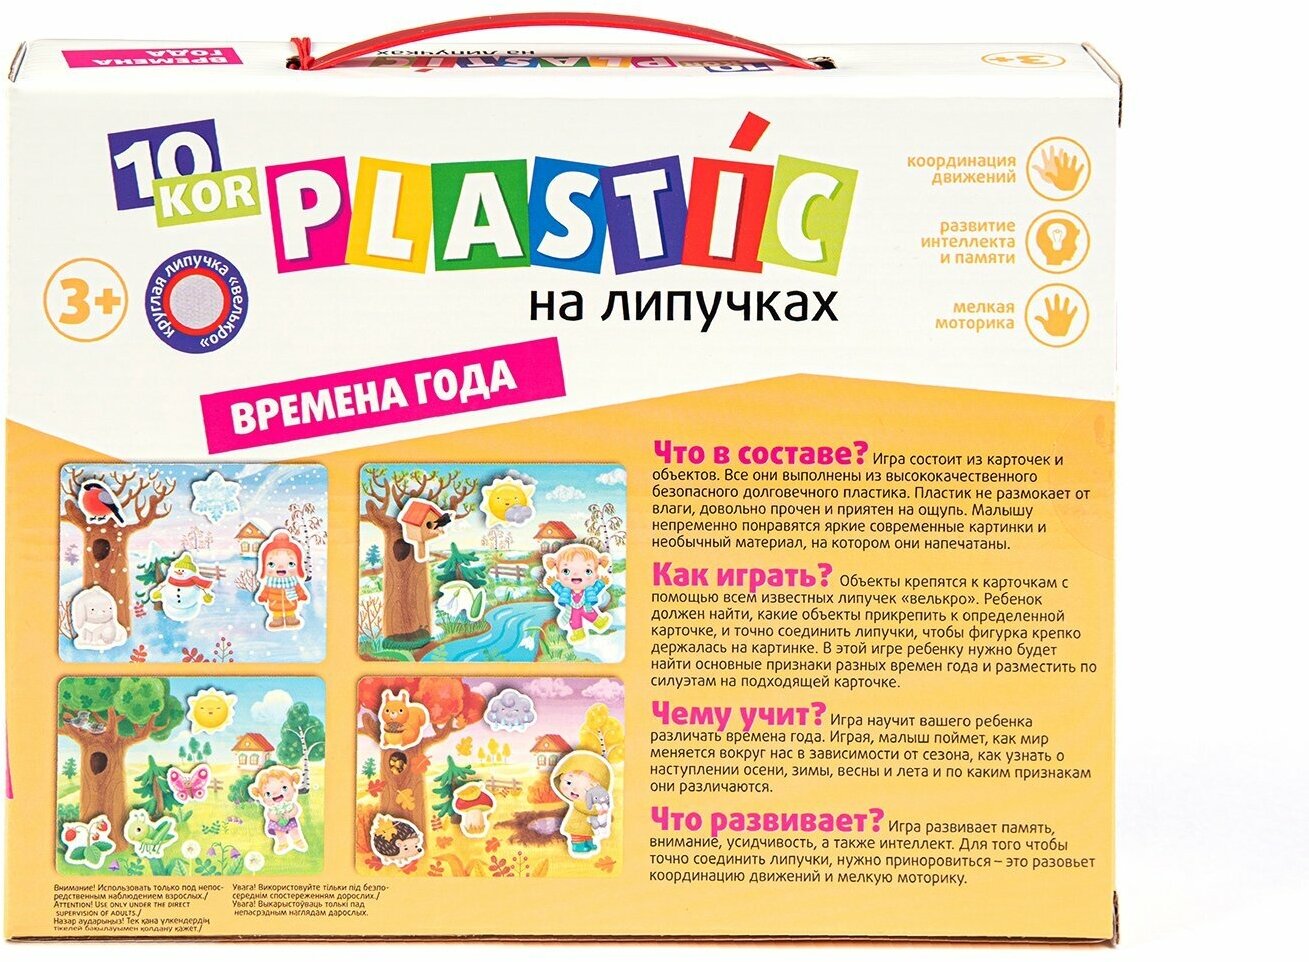 Пластик на липучках "Времена года" 10KOR PLASTIC